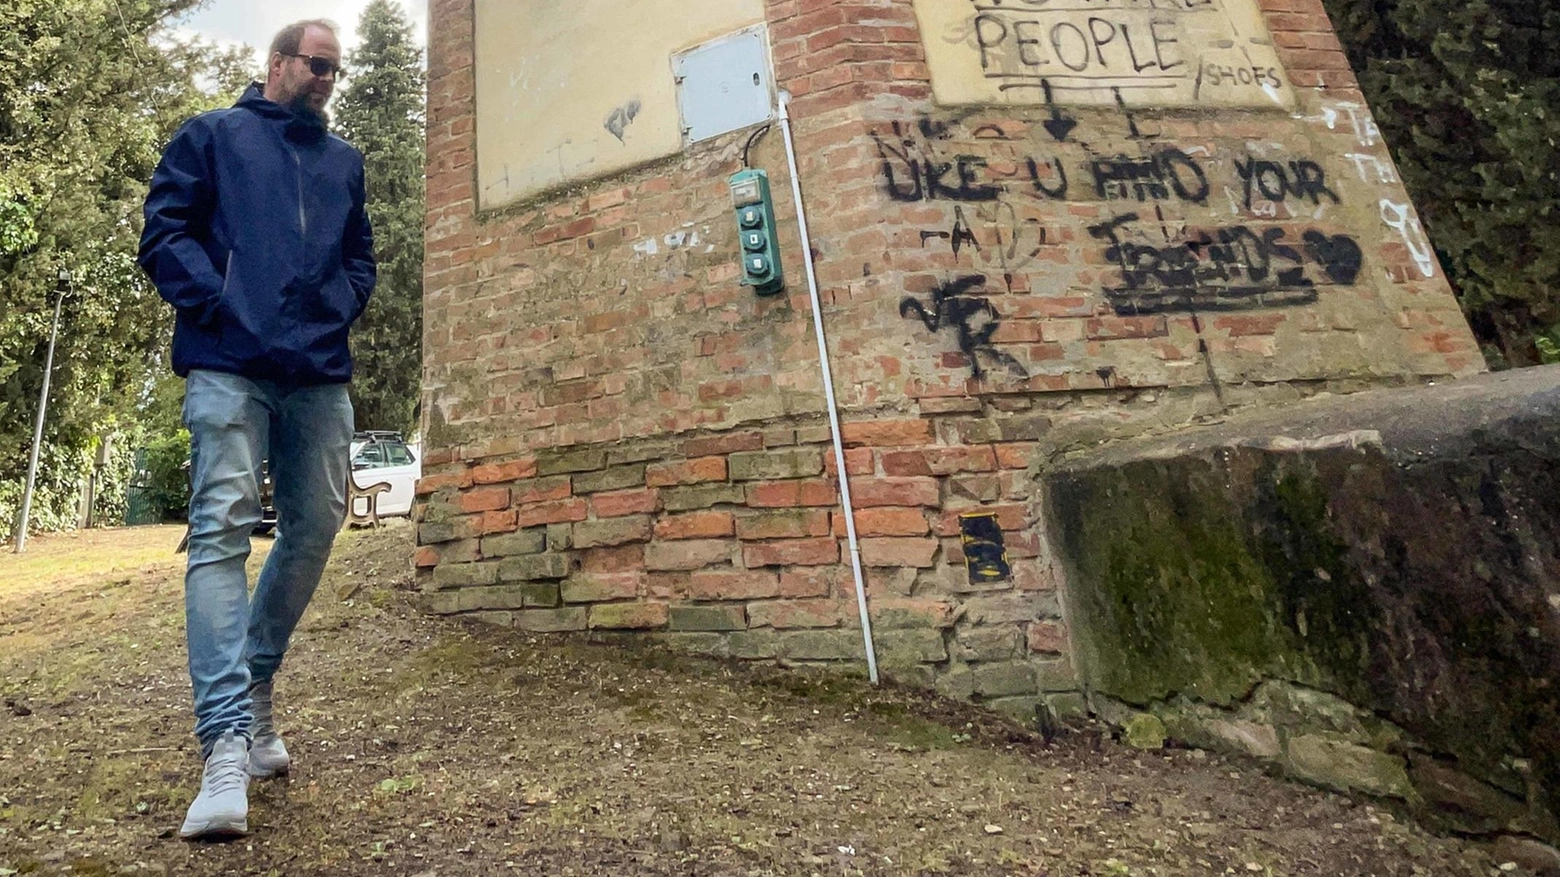 Il monumento ai Caduti di Castelnuovo d’Elsa è stato vandalizzato con graffiti e disegni osceni. Il Comune di Empoli ha deciso di pulirlo tramite un'impresa privata per preservarne il valore storico e religioso.